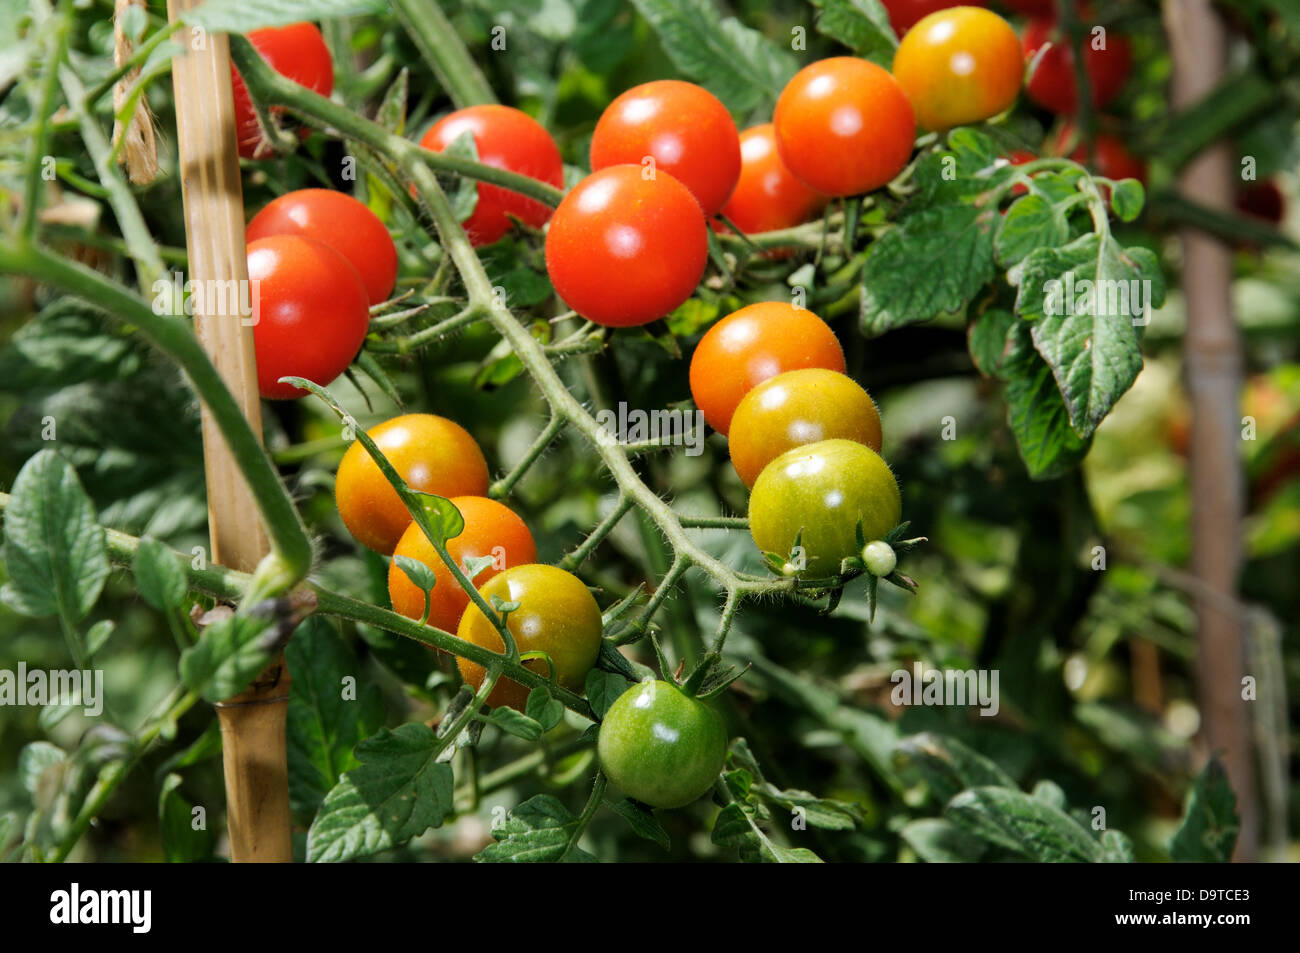 Sweet Million Cherry Tomato plant. Stock Photo